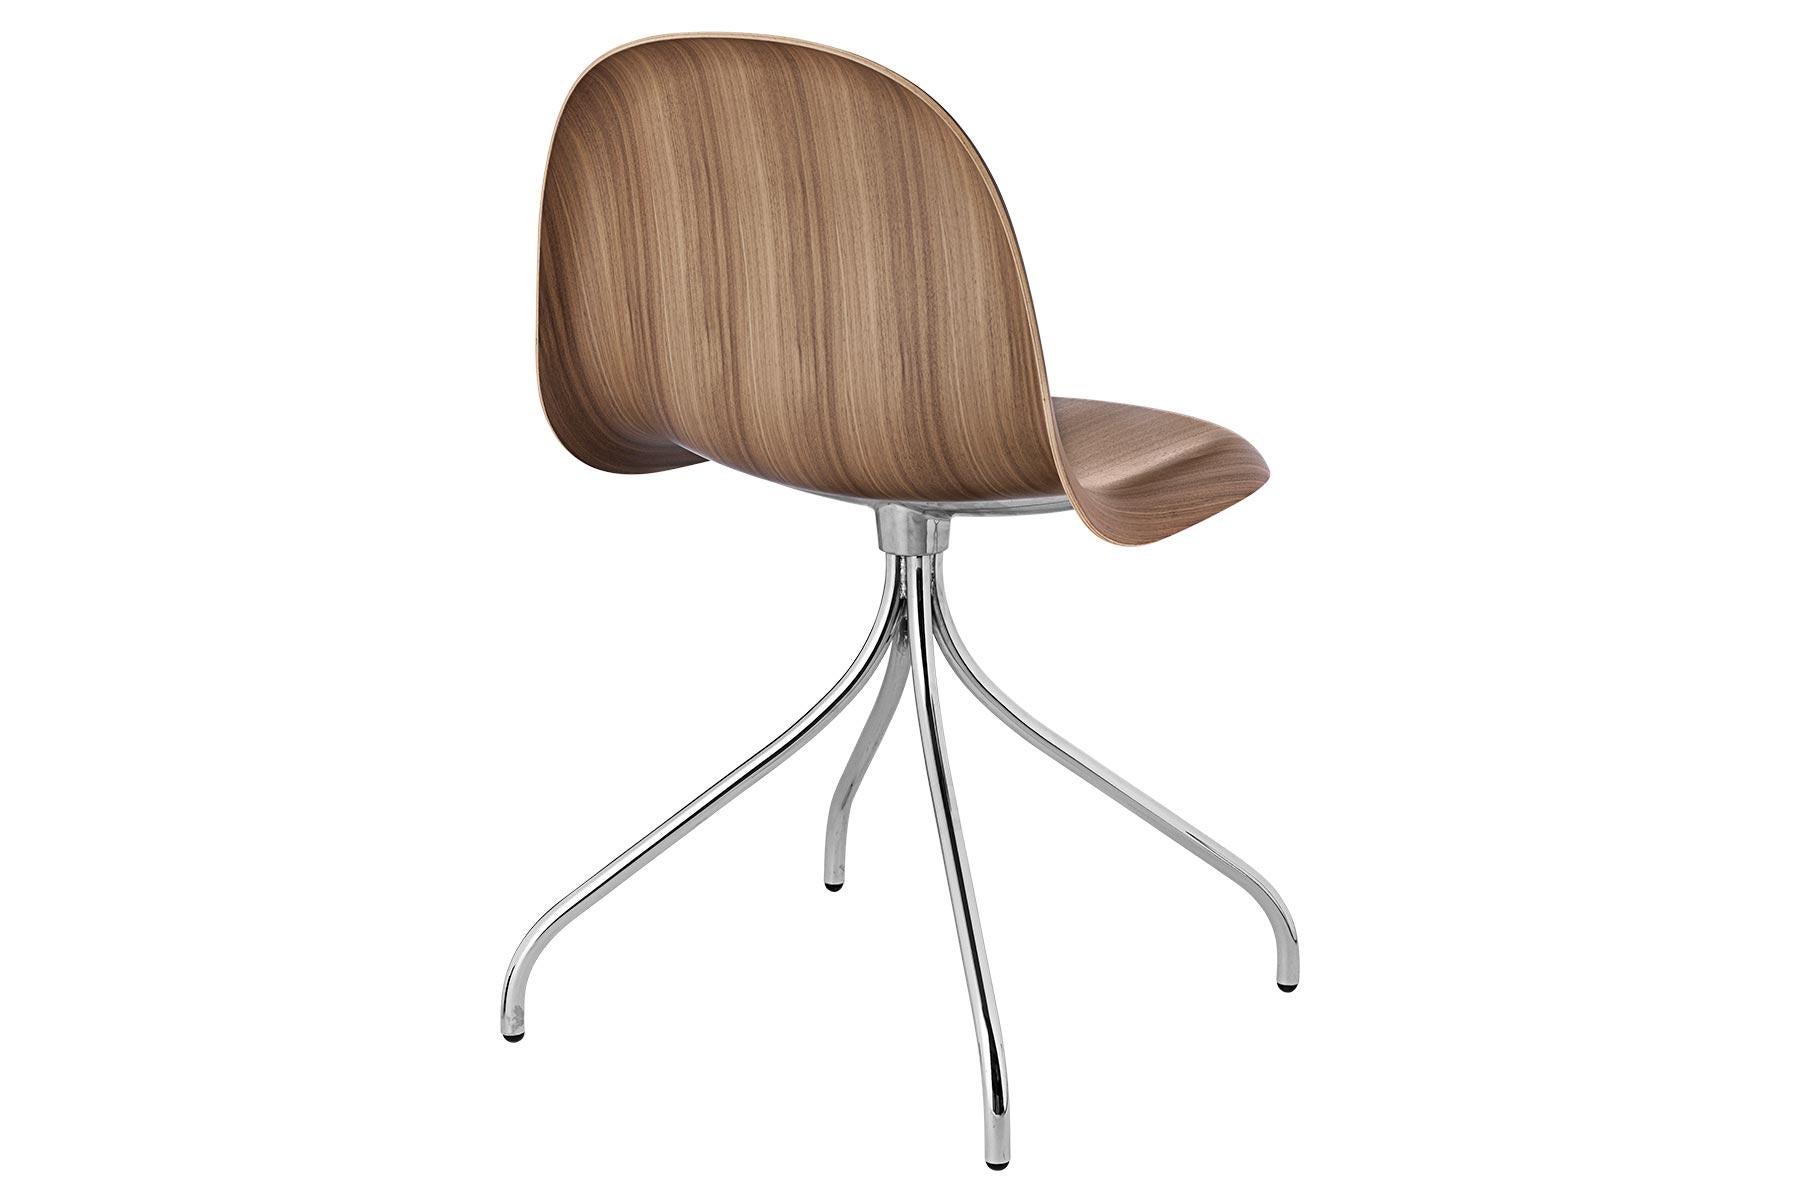 Der Stuhl Gubi von Komplot Design ist das erste Möbeldesign, das auf der innovativen Technik der dreidimensionalen Verformung von Furnier basiert. Das 3D-Design verleiht dem Stuhl einen bequemen Sitz und ein Gefühl von Leichtigkeit, da alle Kanten